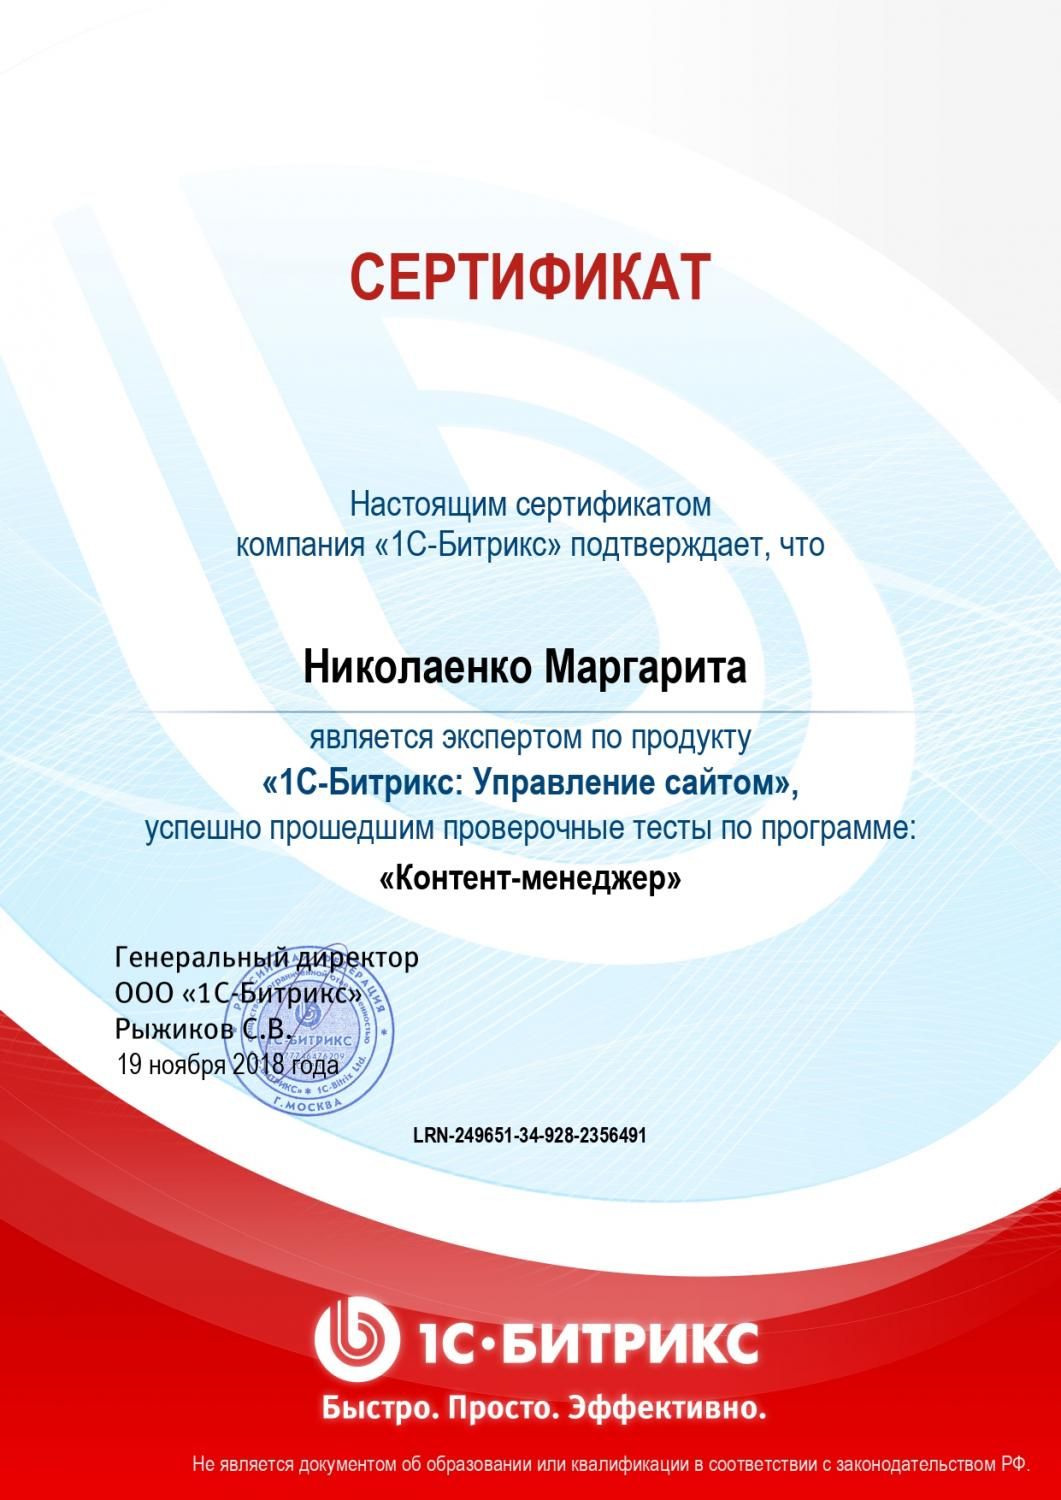 Сертификат эксперта по программе "Контент-менеджер" - Николаенко М. в Ижевска